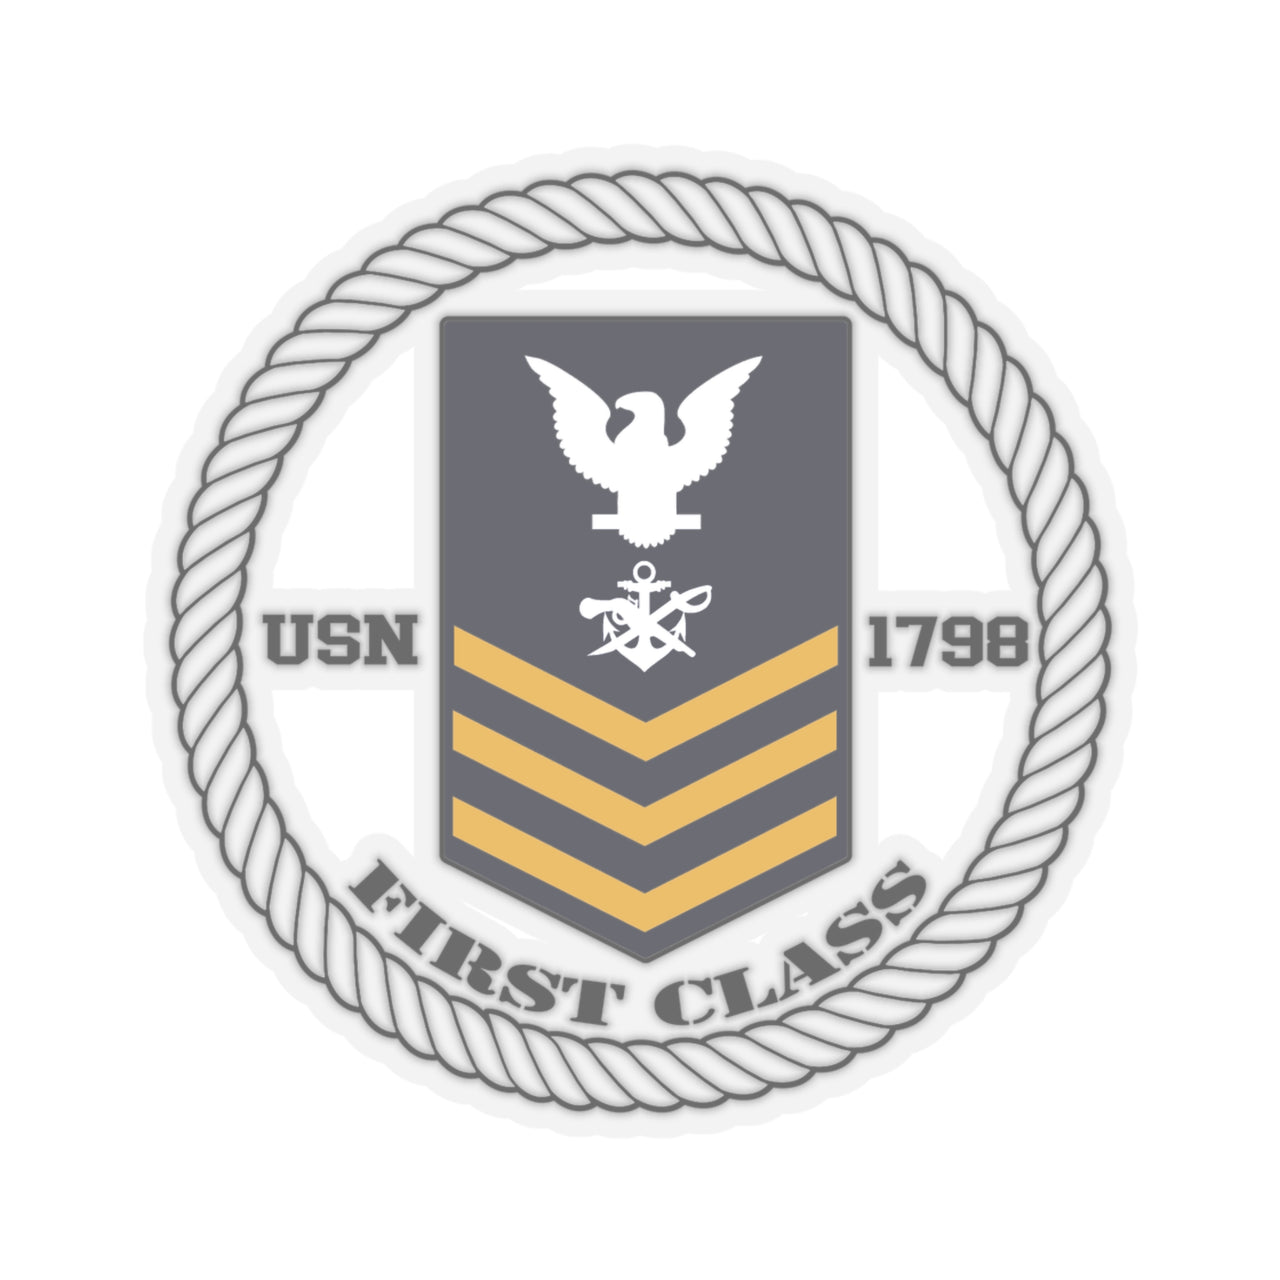 Petty Officer First Class SB1 (Gold)